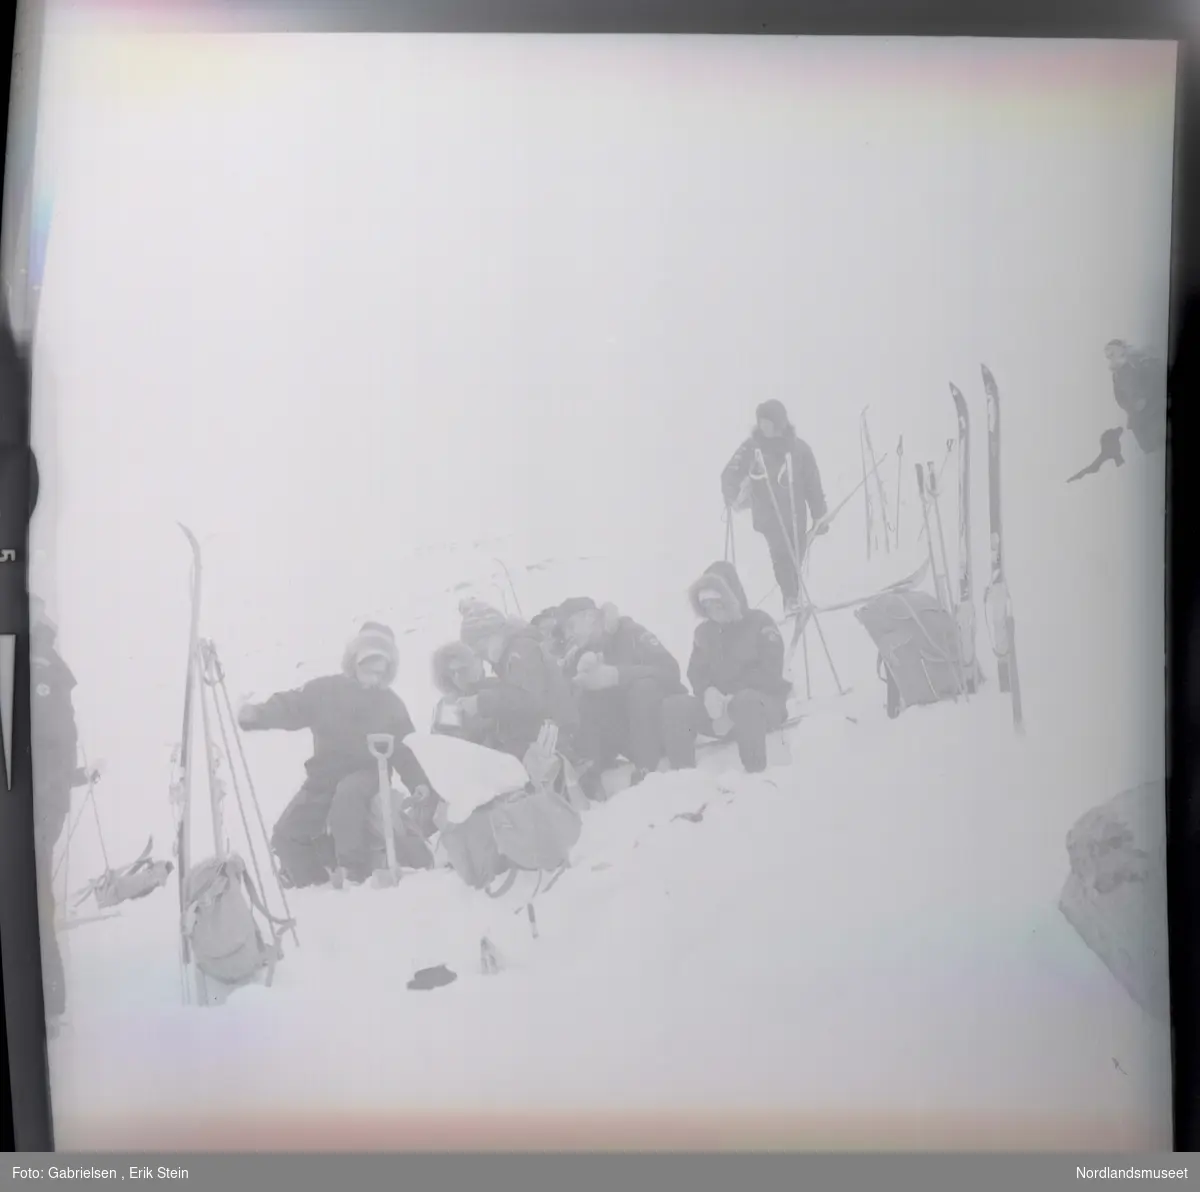 Fotografi av mange kvinner og menn kledd i vinterklær
som sitter på en snøbakke  på fjellet og graver etter mat og drikke i en tursekk som som ligger på snøen og en mann som går på ski på snøbakken over de og en kvinne som står på toppen av snøbakken vedsiden av en svart hund ¨
og man ser mange ski og skistaver og tursekker som står vedsiden av gruppen som er på skitur i fjellet 
og man ser litt av en mann som står på snøen vedsiden
av noen ski og skistaver og en tursekk som står i snøen